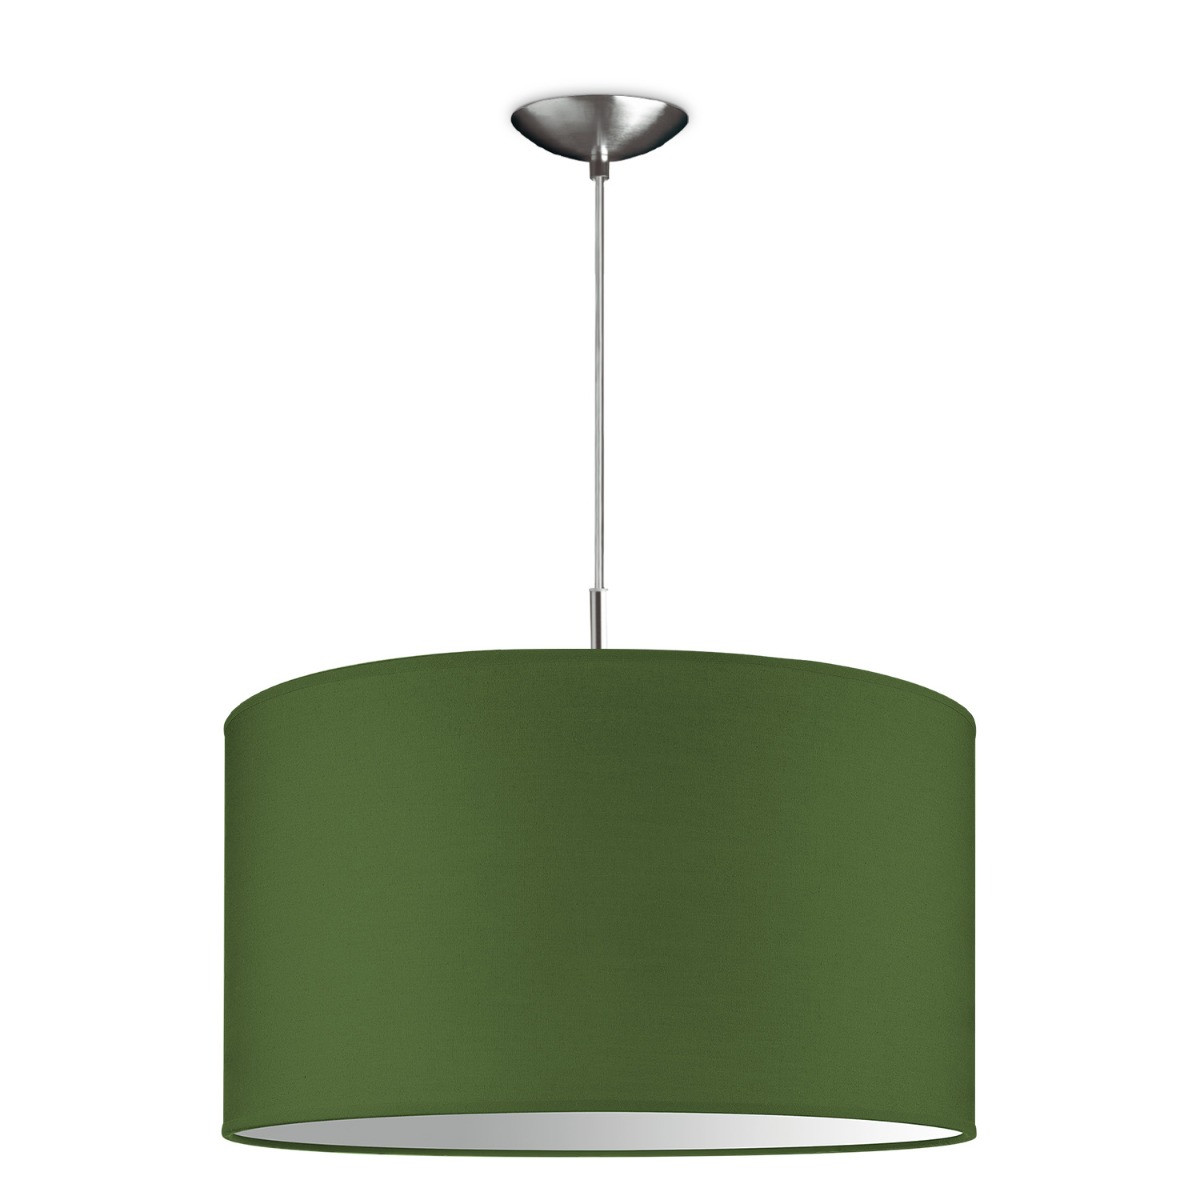 Light depot - hanglamp tube deluxe bling Ø 45 cm - groen - Outlet